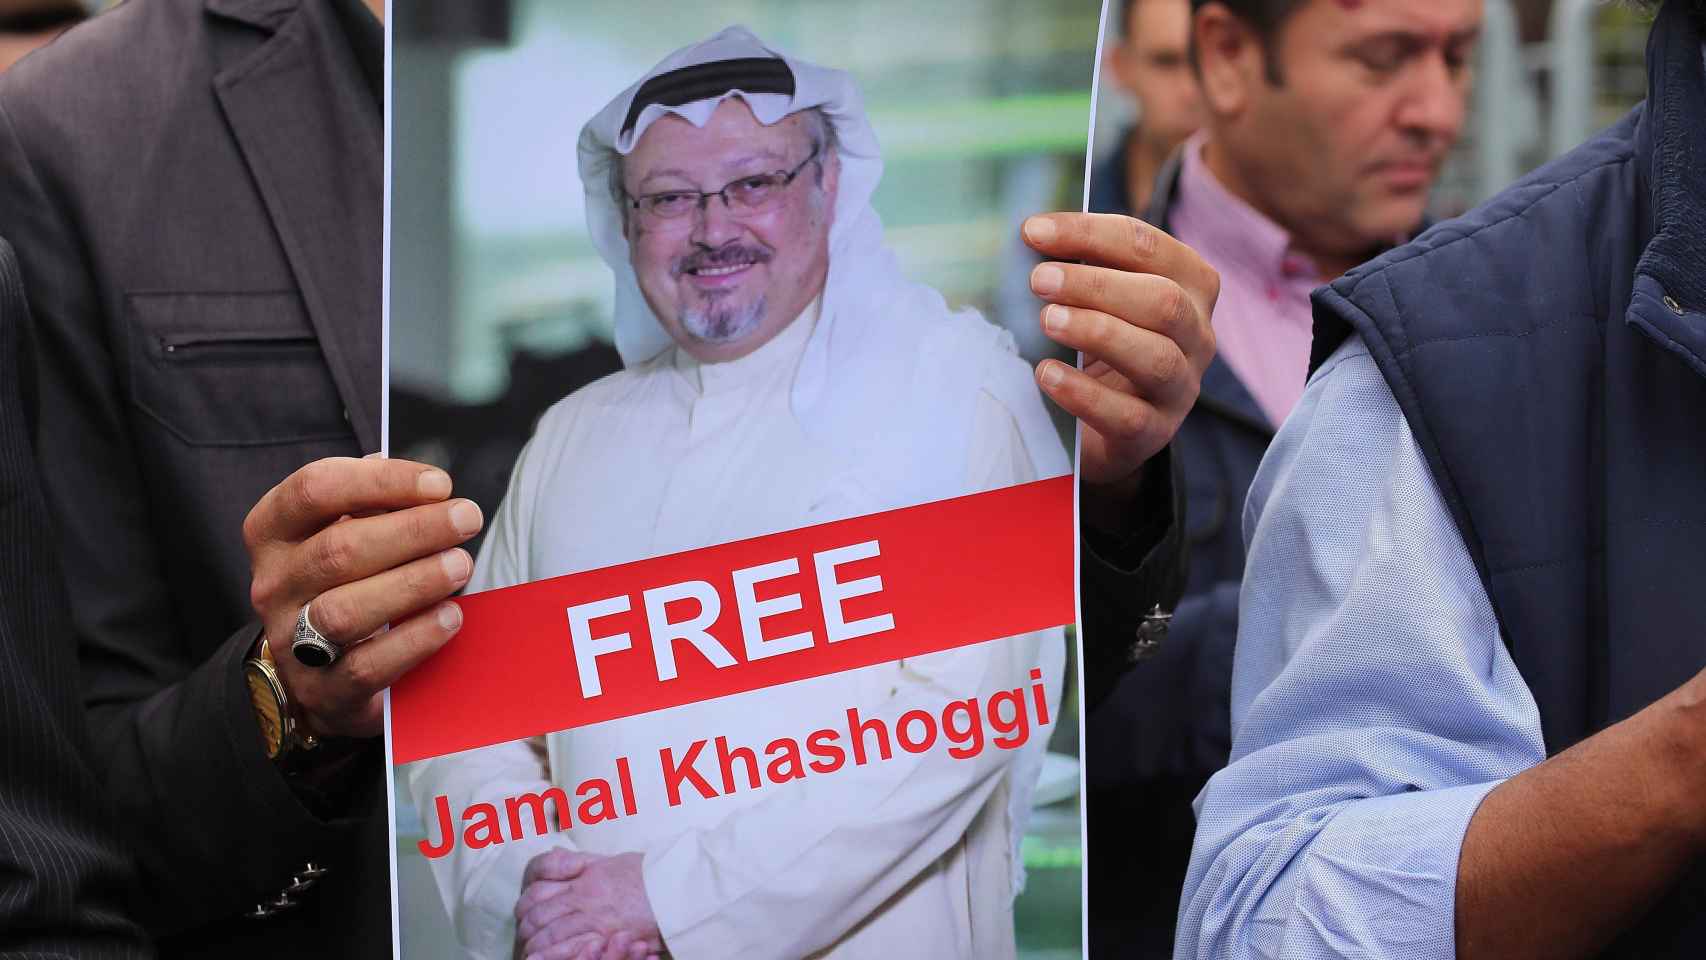 Turquía pide permiso para registrar el consulado saudí en busca de periodista